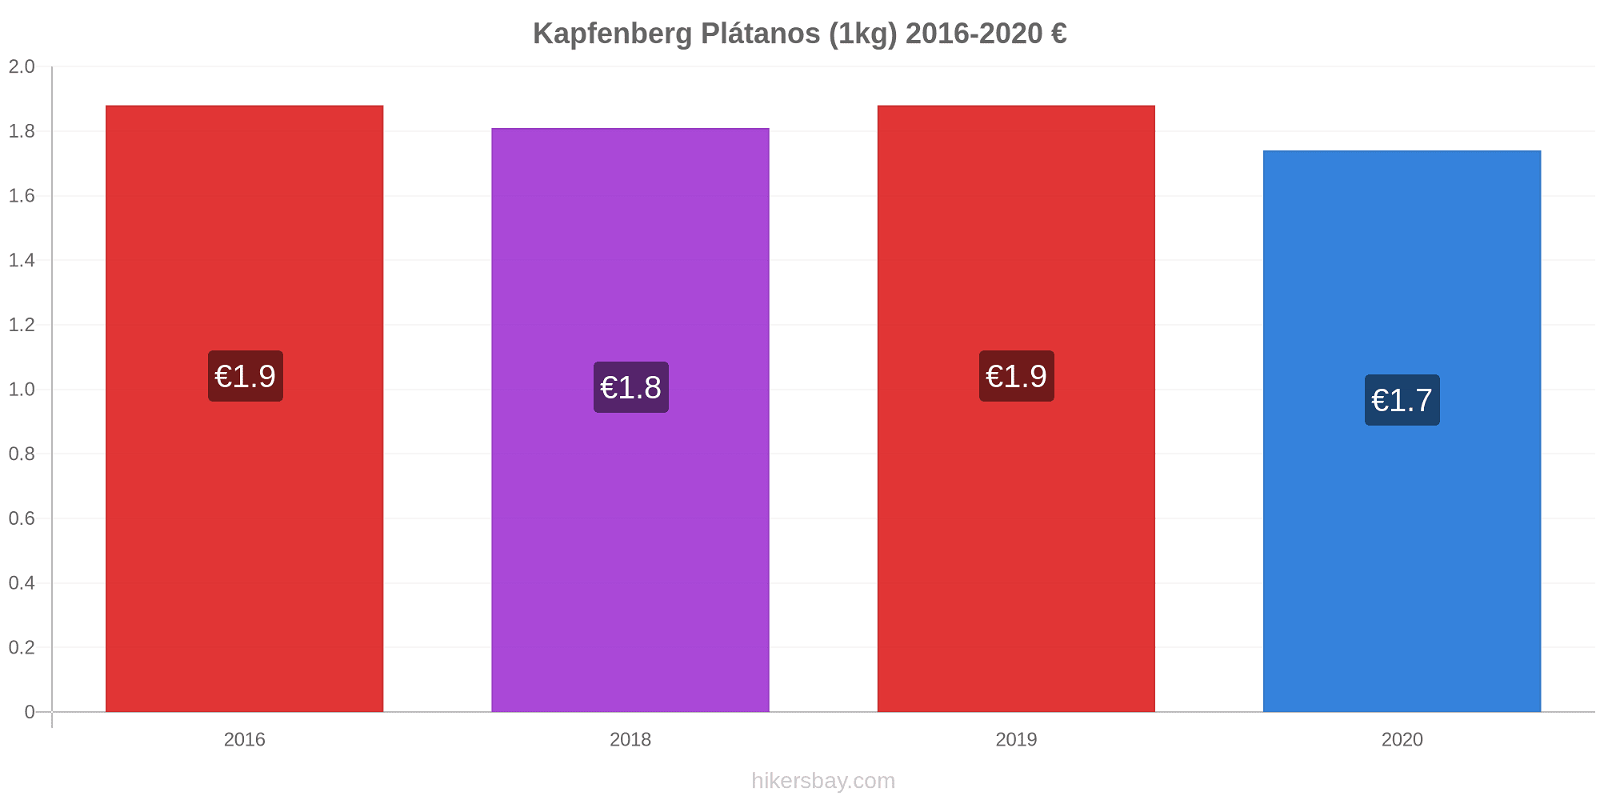 Kapfenberg cambios de precios Plátano (1kg) hikersbay.com